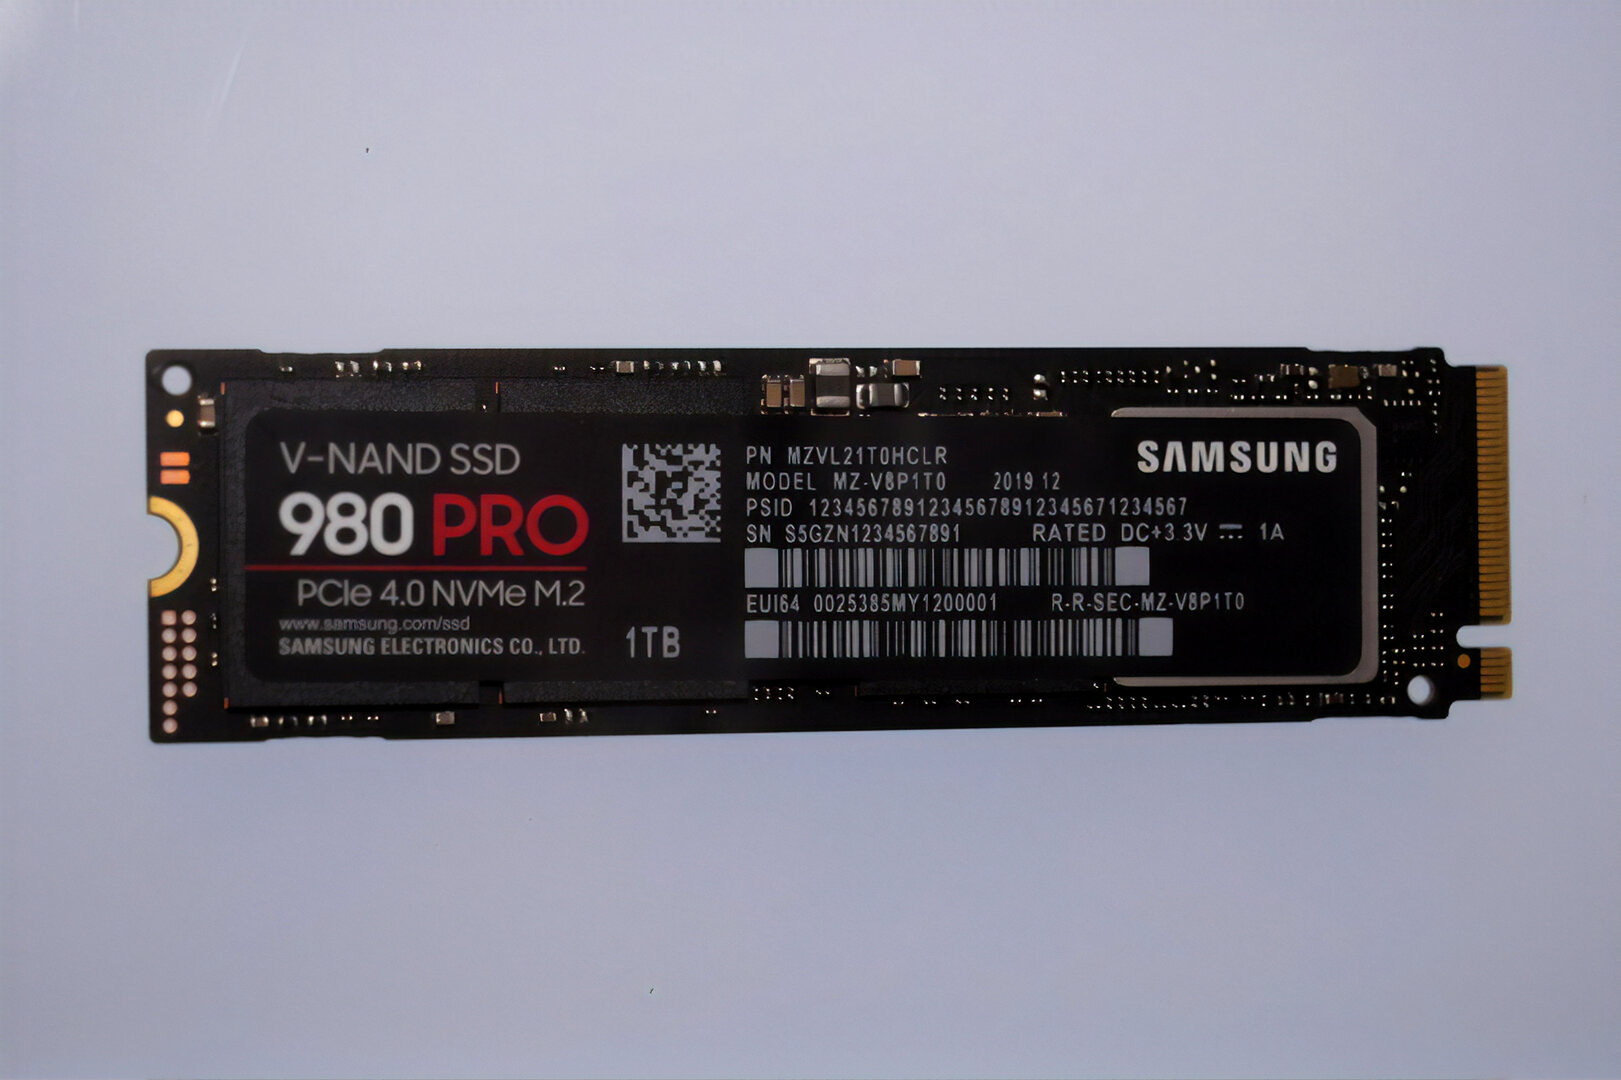 Samsung 980 Pro SSD mit PCIe 4.0